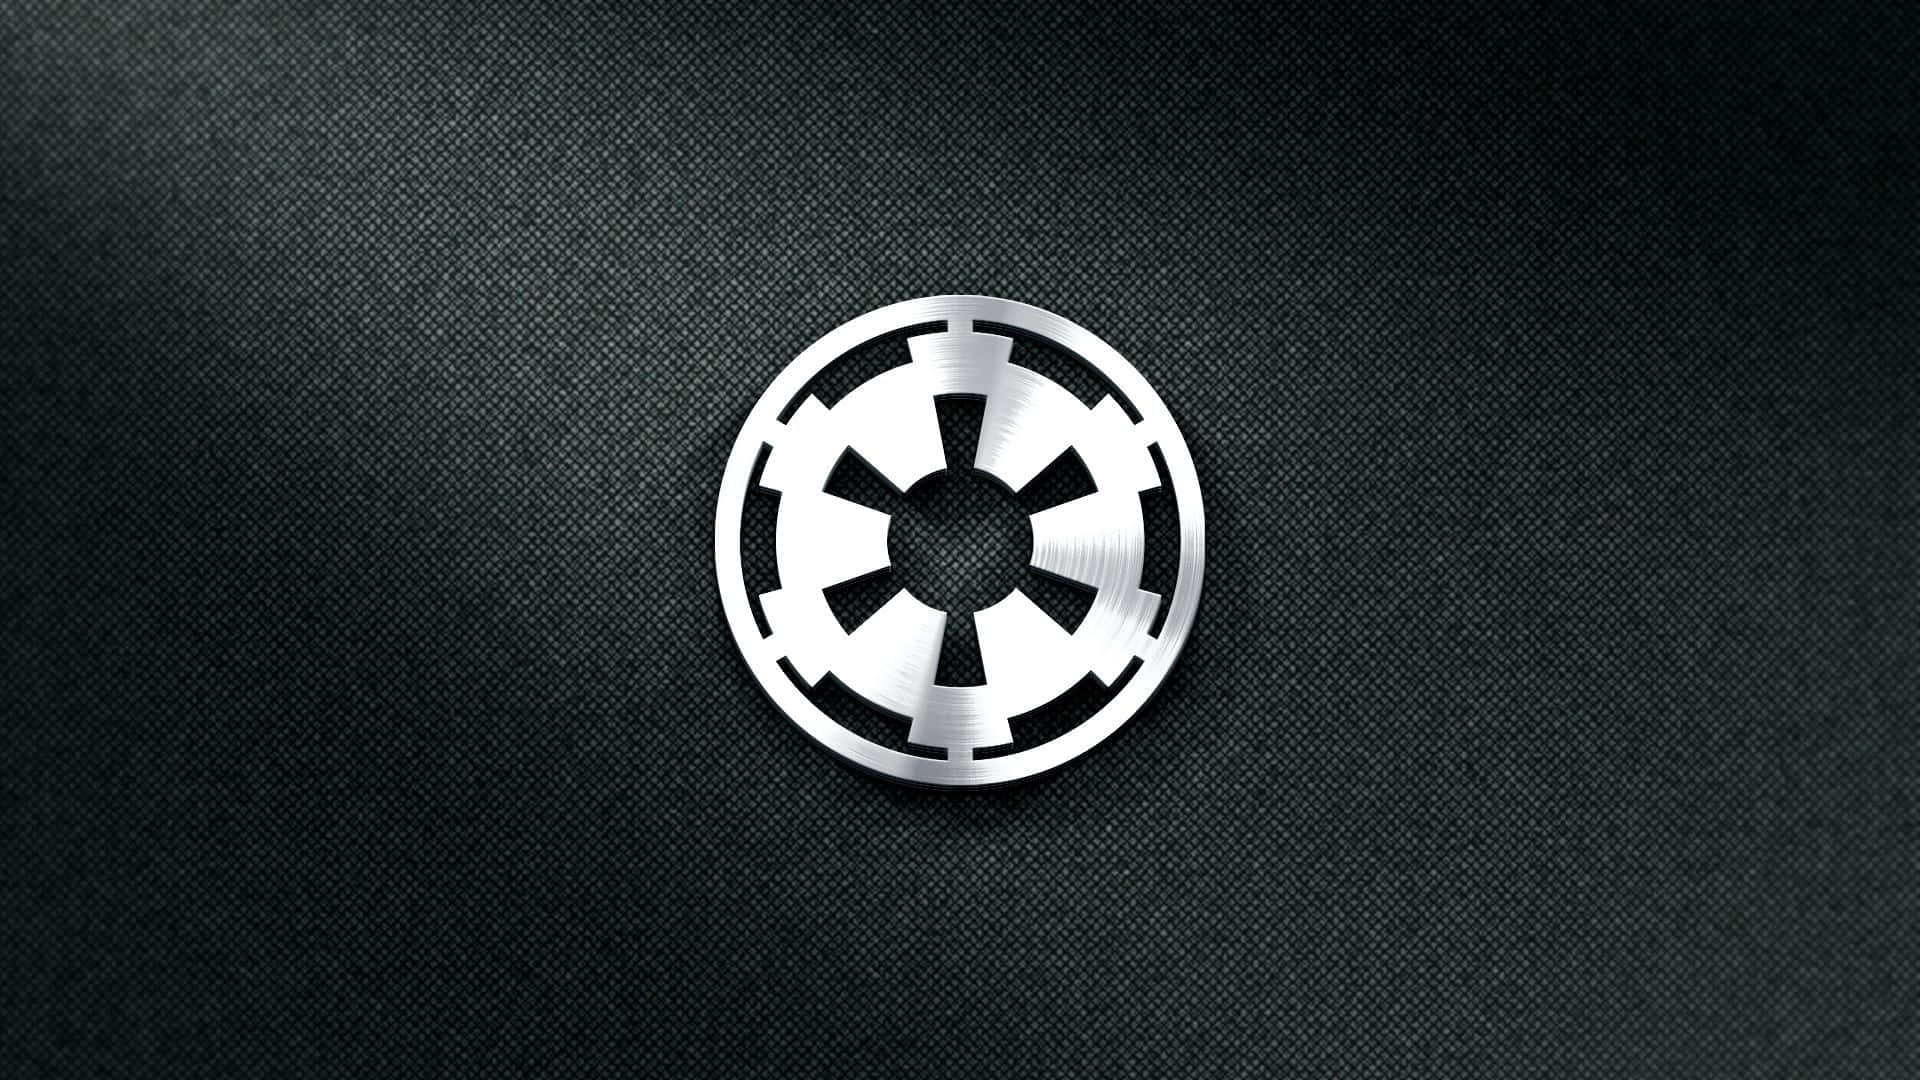 Detofficiella Logotypen För Galaktiska Imperiet Från Den Ursprungliga Star Wars-trilogin. Wallpaper